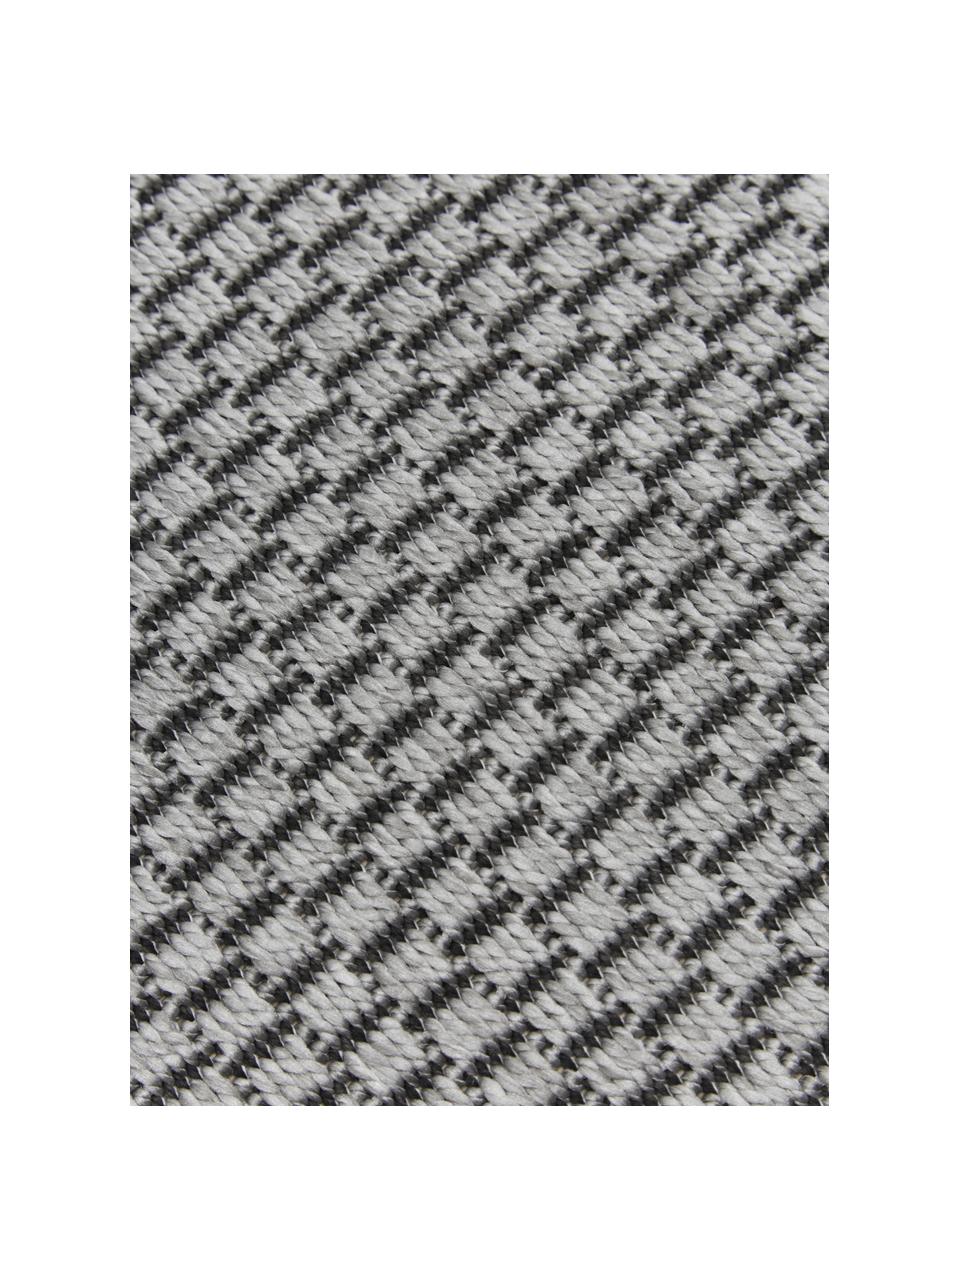 Okrągły dywan wewnętrzny/zewnętrzny Toronto, 100% polipropylen, Szary, Ø 120 cm (Rozmiar S)